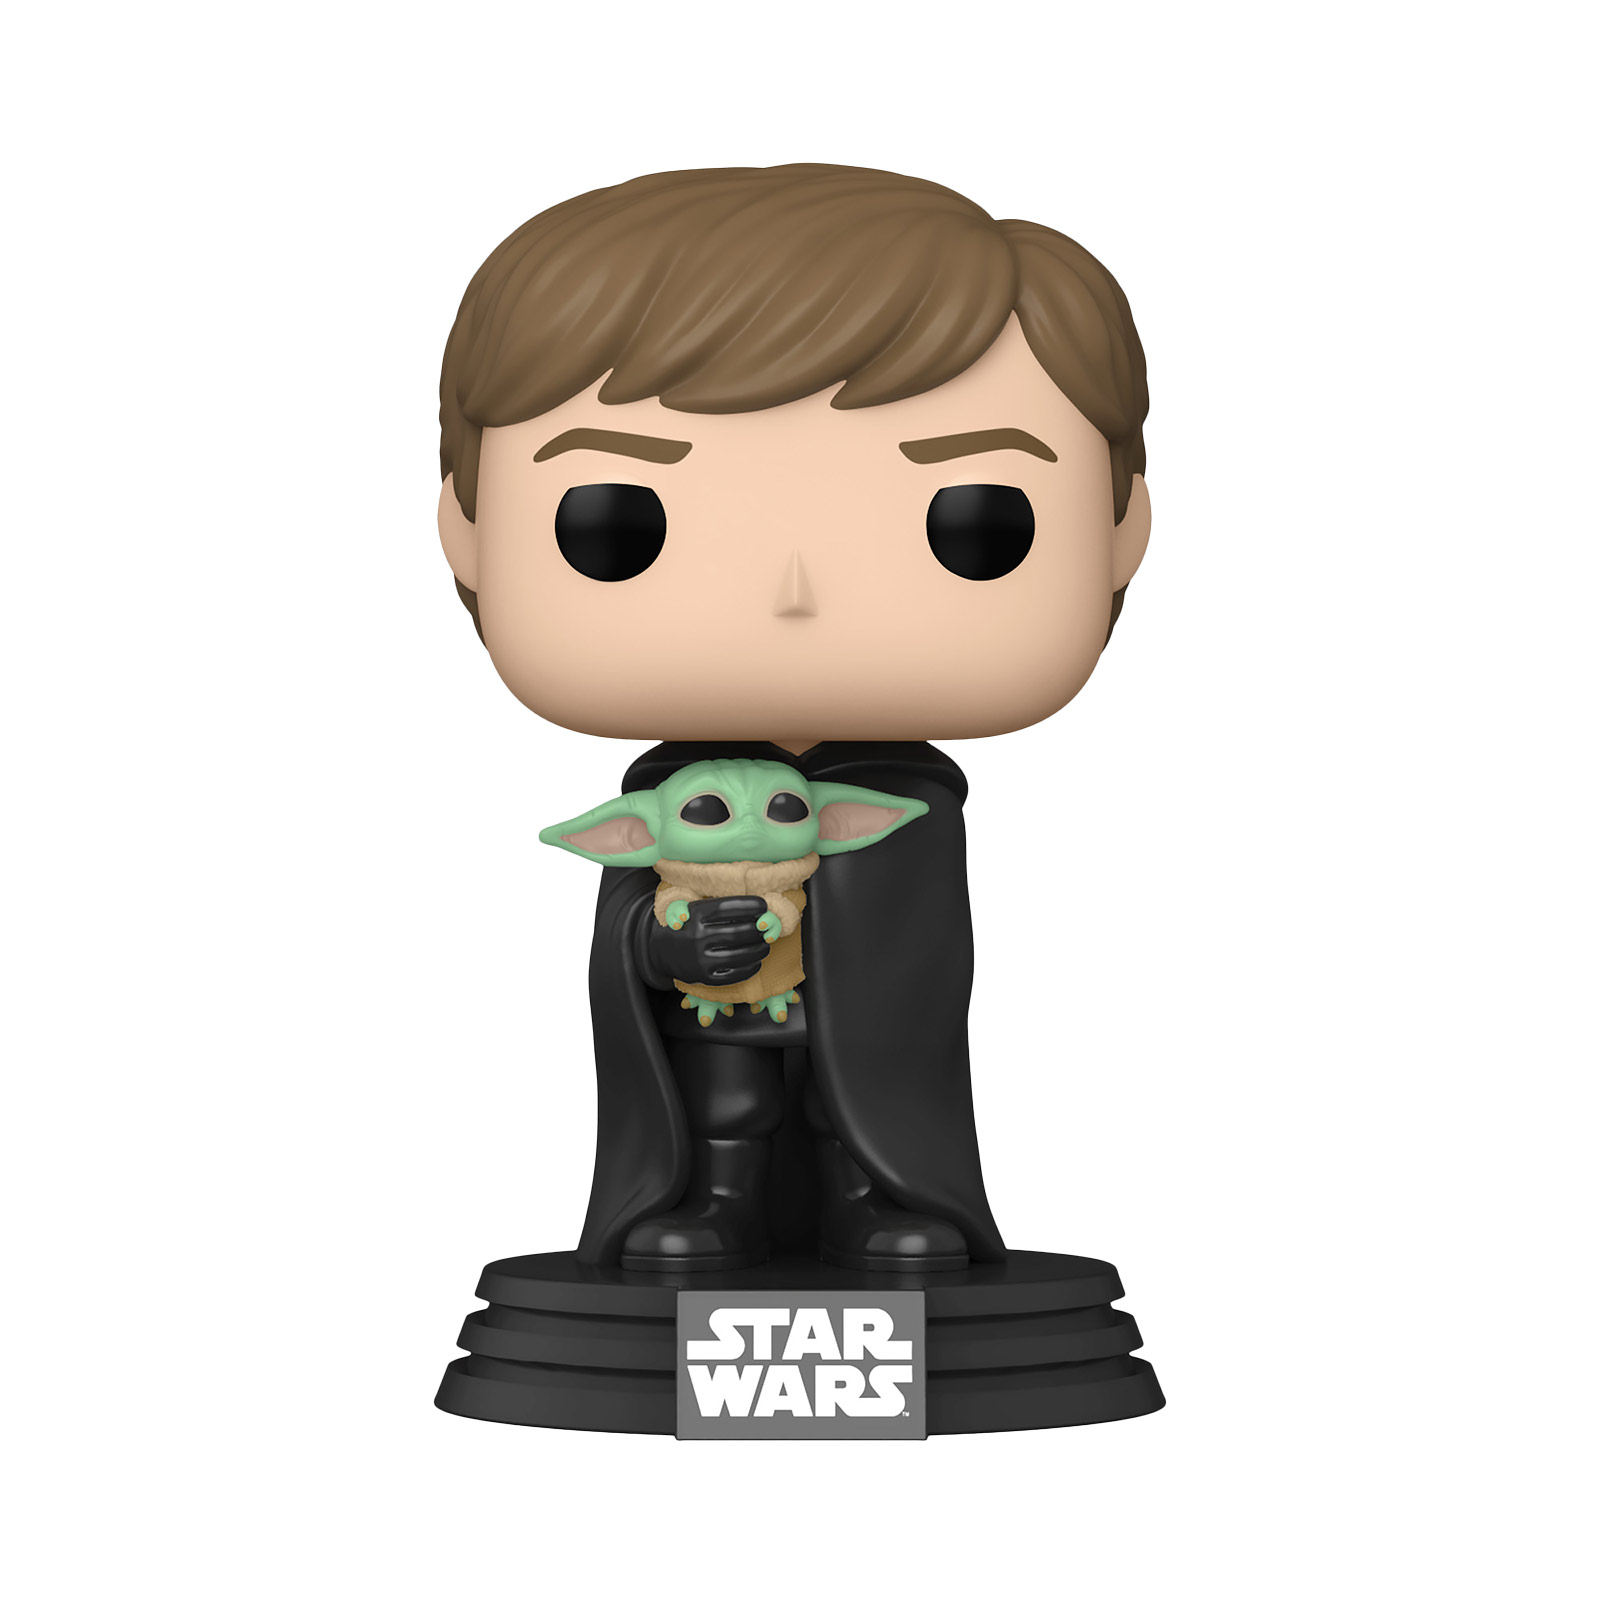 Luke Skywalker with Grogu Funko Pop Bobblehead Figure - Star Wars The Mandalorian